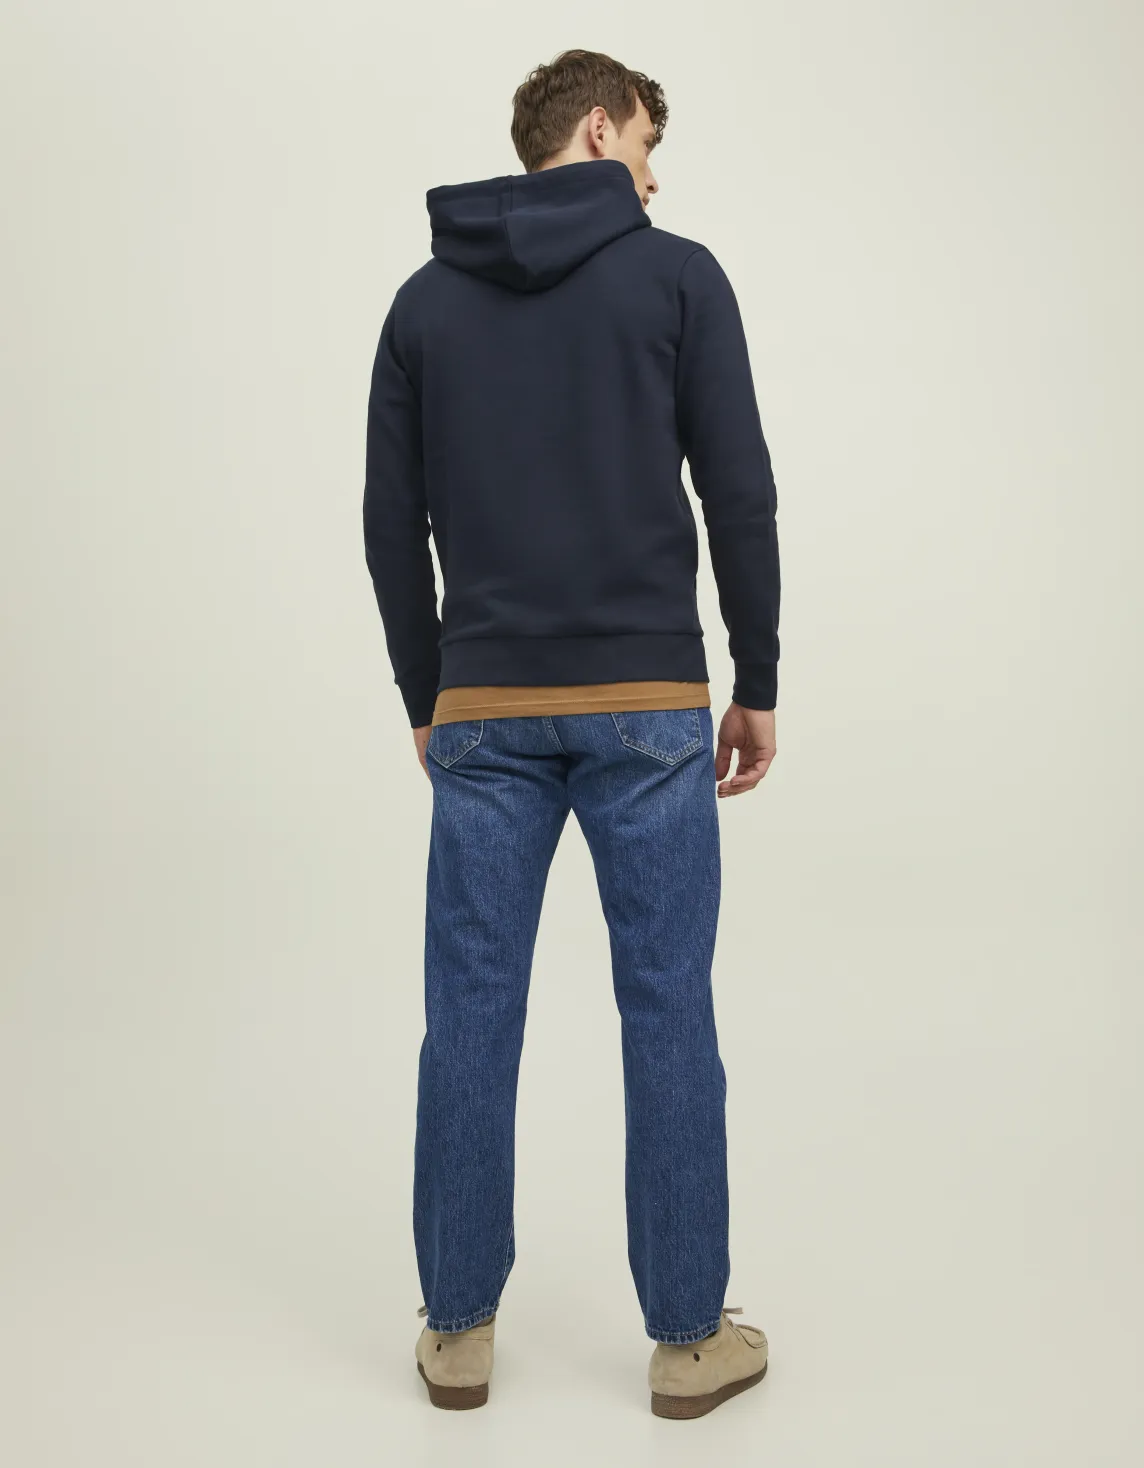 Erkek Kapüşonlu Premium Baskılı Sweatshirt - Bluarchie Mavi